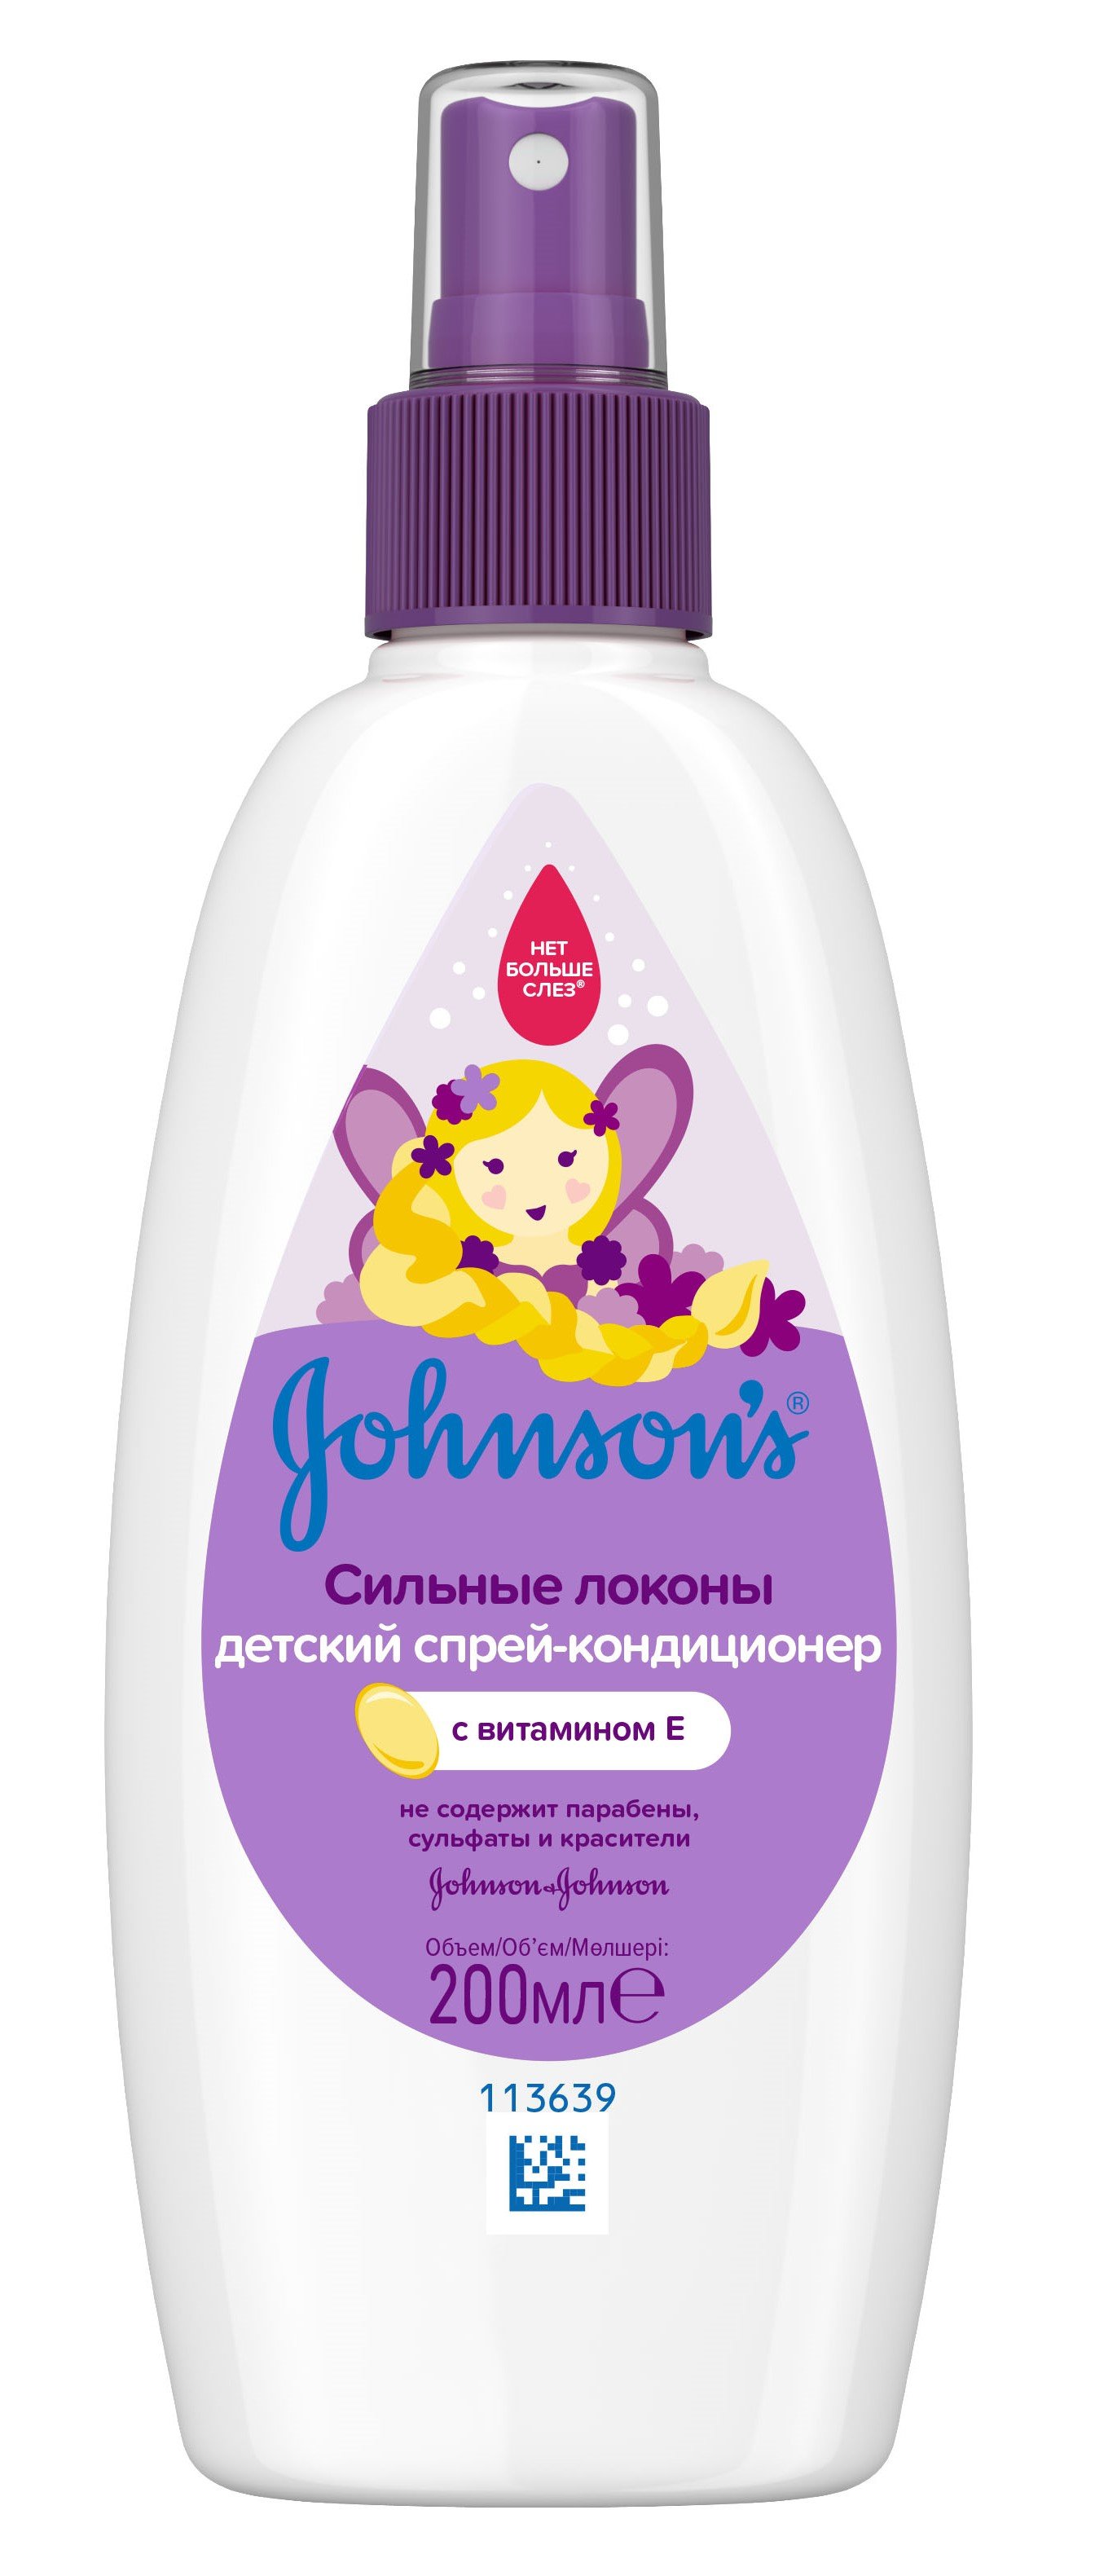 Дитячий спрей-кондиціонер для волосся Johnson’s Baby Сильні локони, 200 мл - фото 1